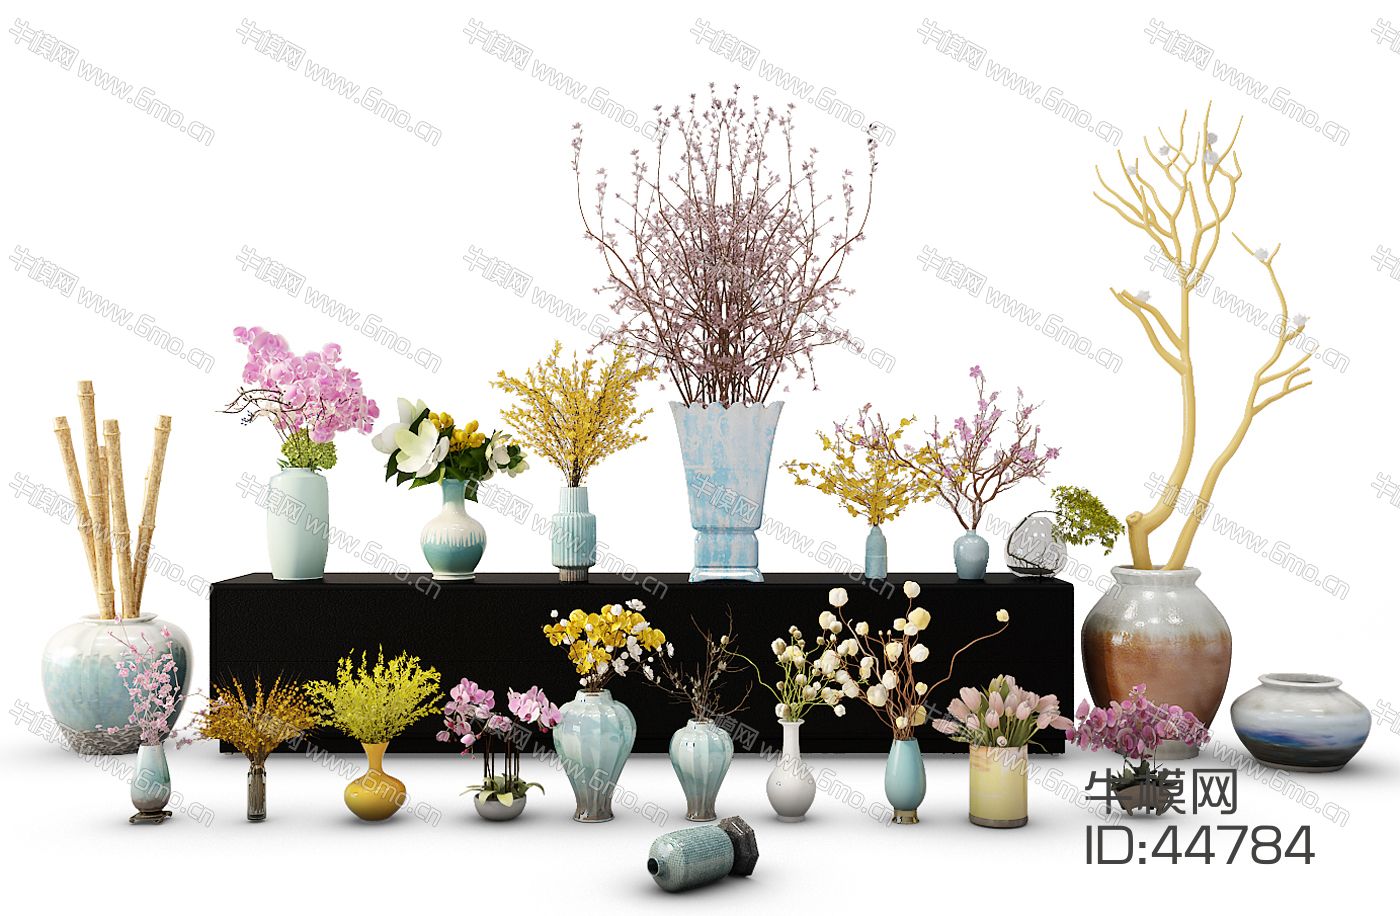 中式陶瓷花瓶花卉组合